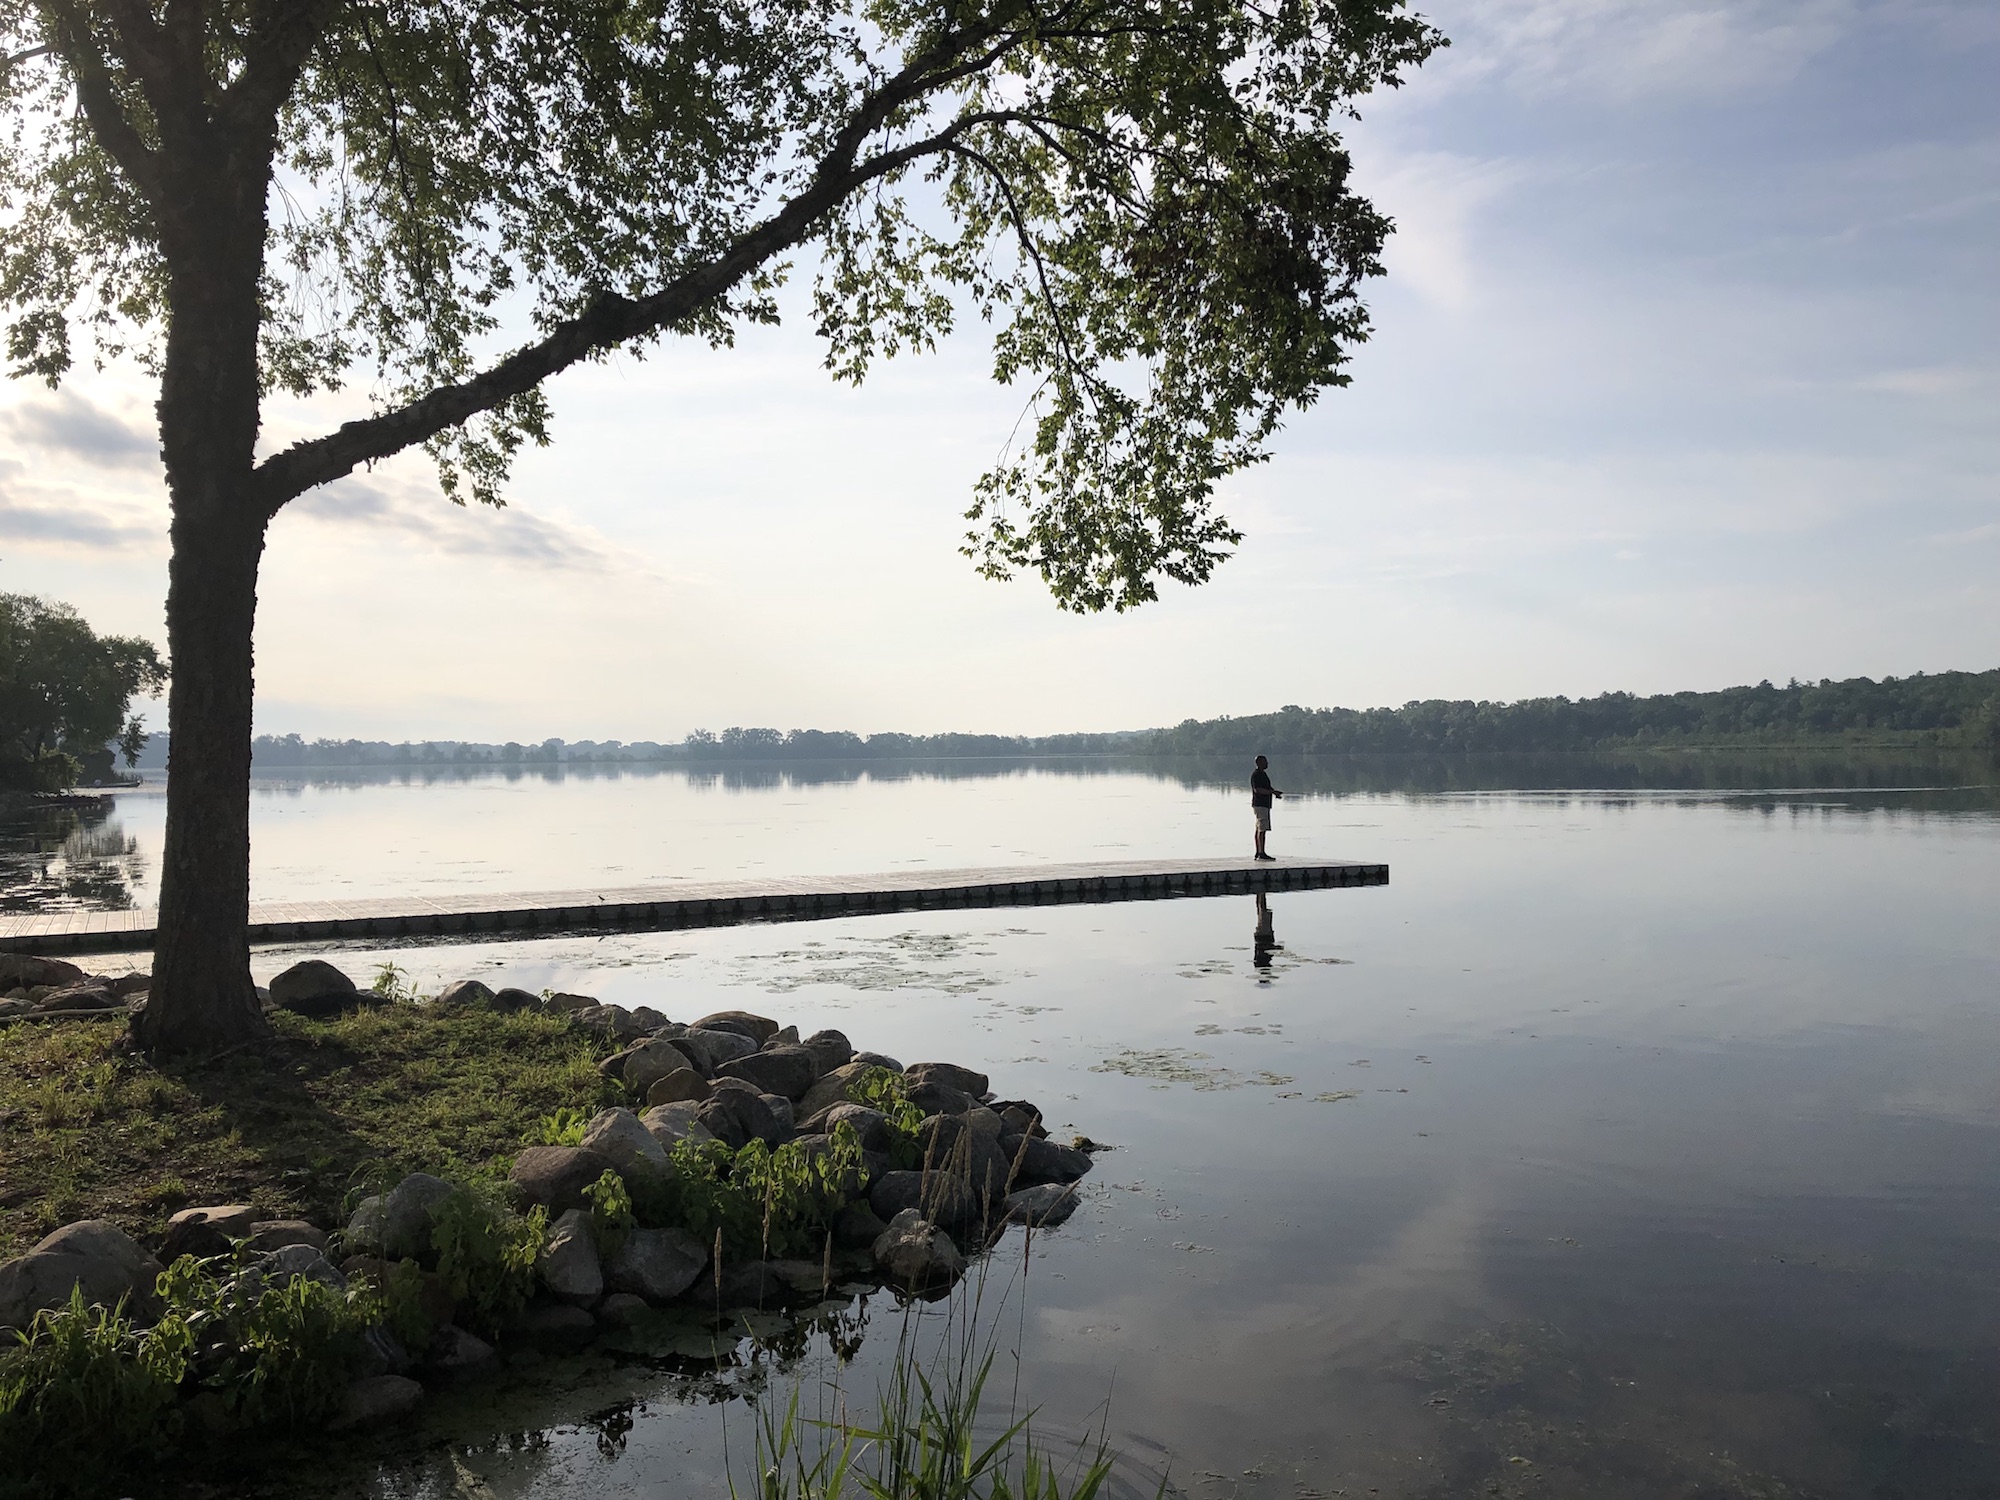 Lake Wingra on June 29, 2019.